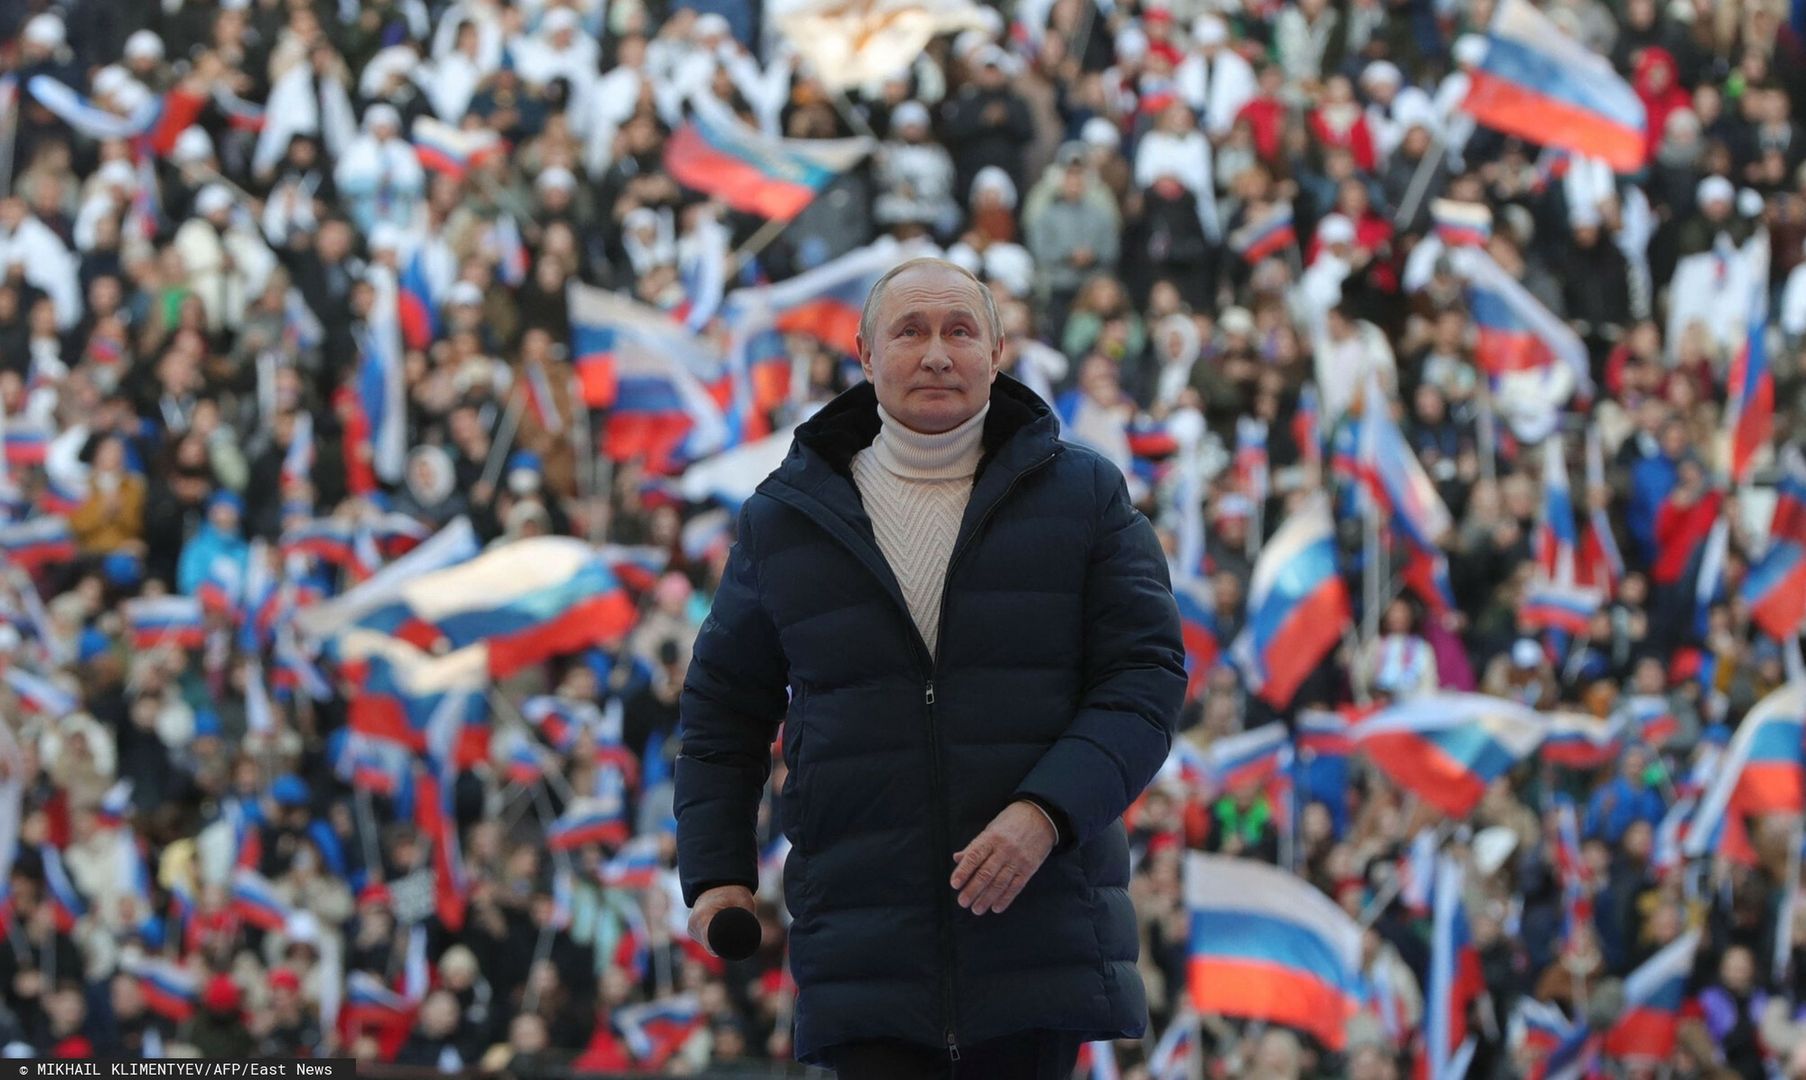 Putin coraz mocniejszy. Sondaż pokazał smutną prawdę o Rosjanach. Zachód nie może liczyć na cud